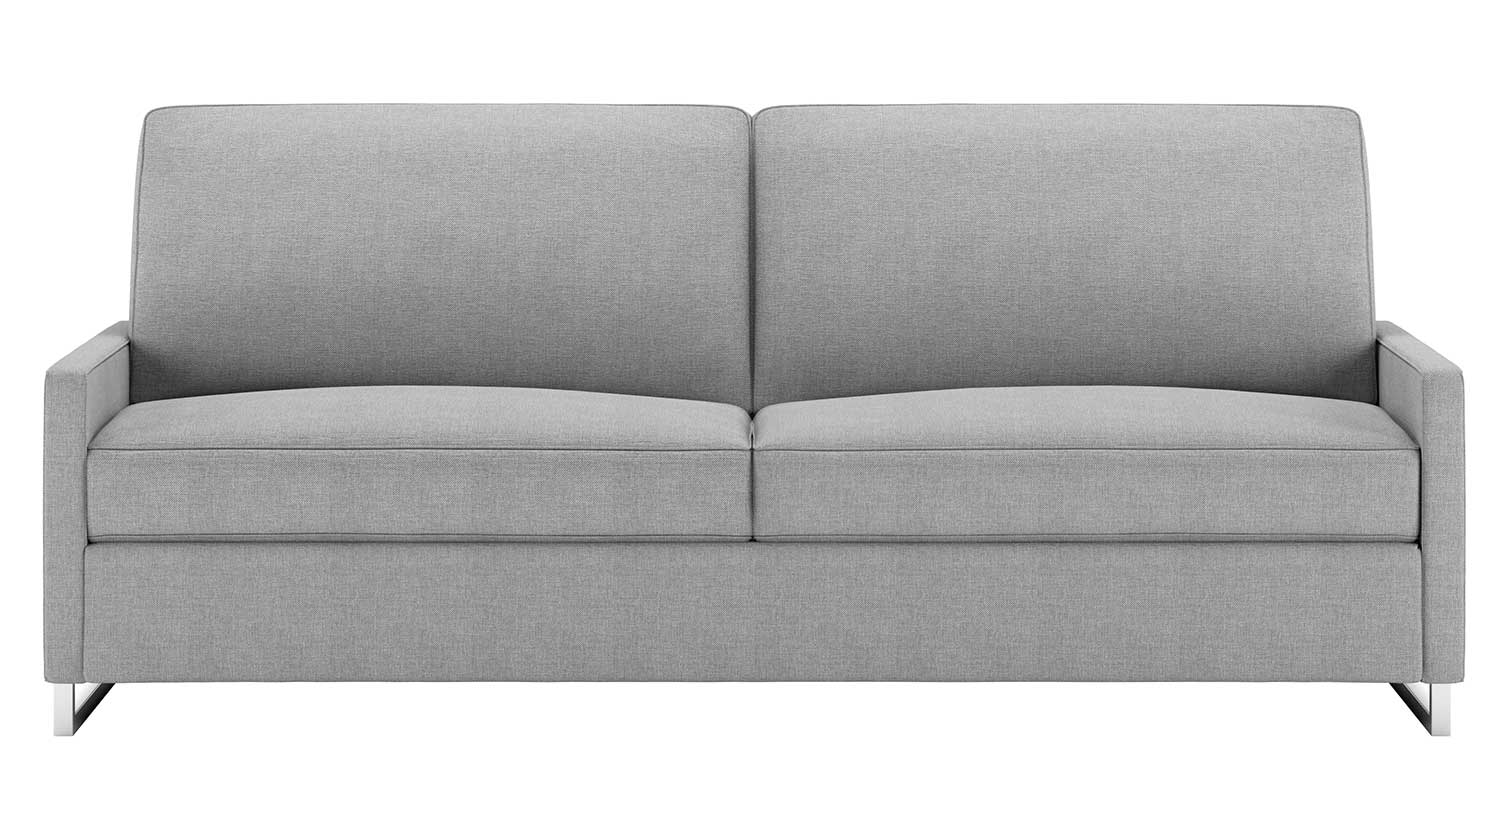 Brandt Comfort Sleeper sofa